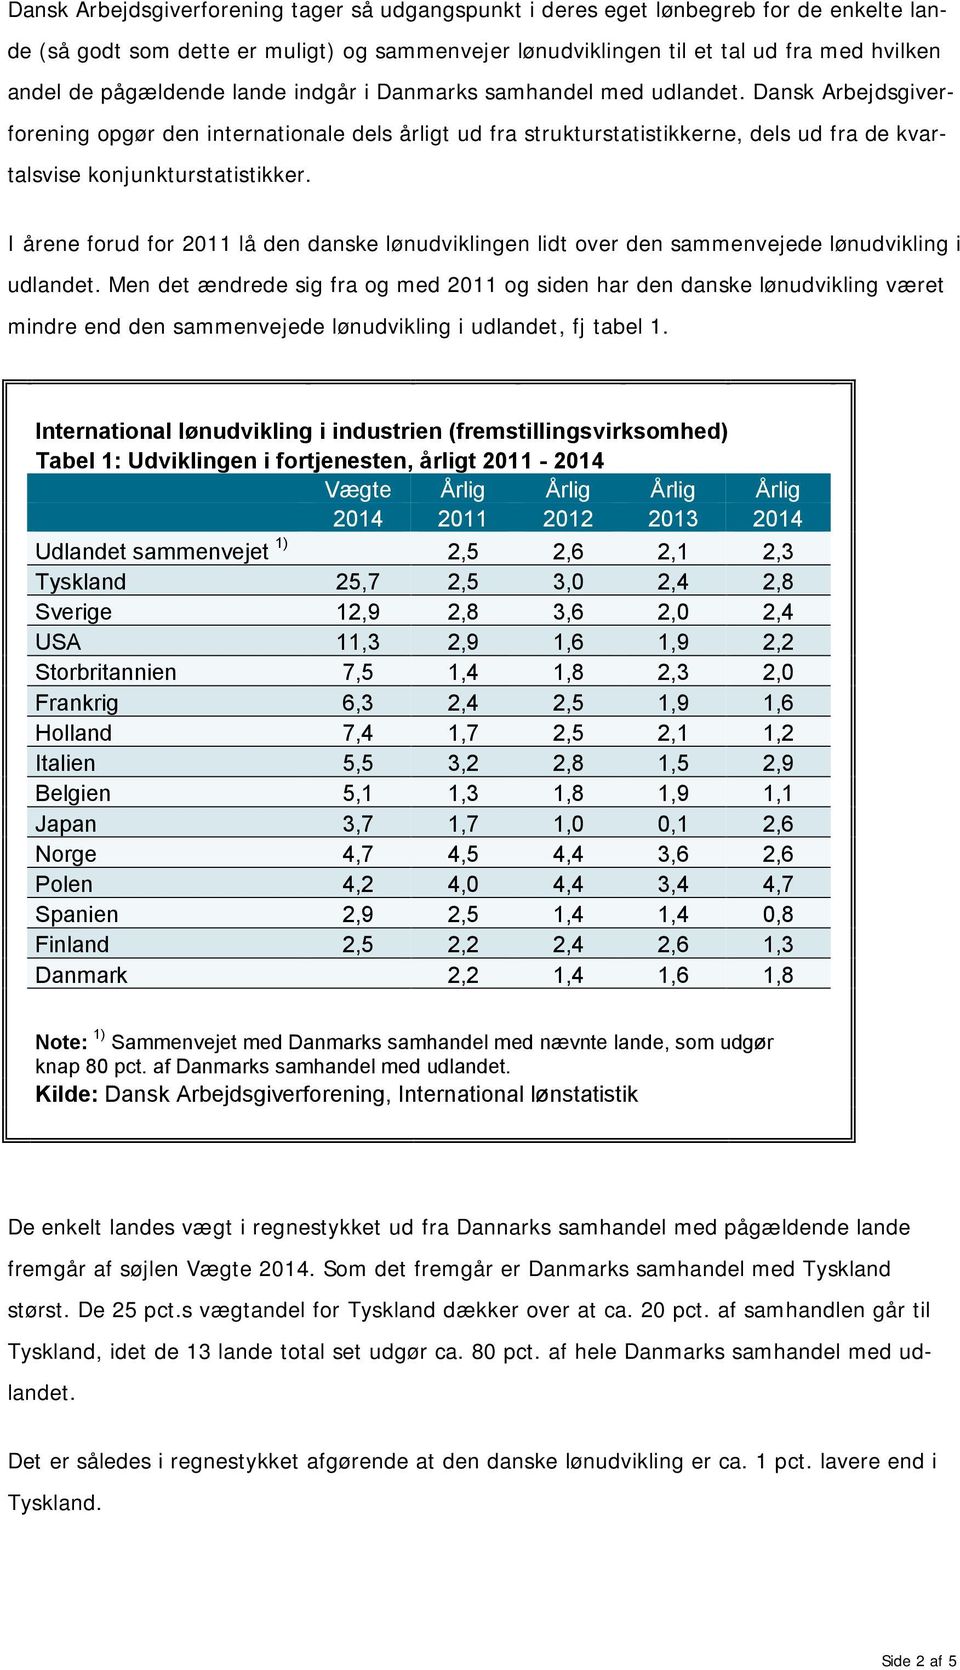 Dansk Arbejdsgiverforening opgør den internationale dels årligt ud fra strukturstatistikkerne, dels ud fra de kvartalsvise konjunkturstatistikker.